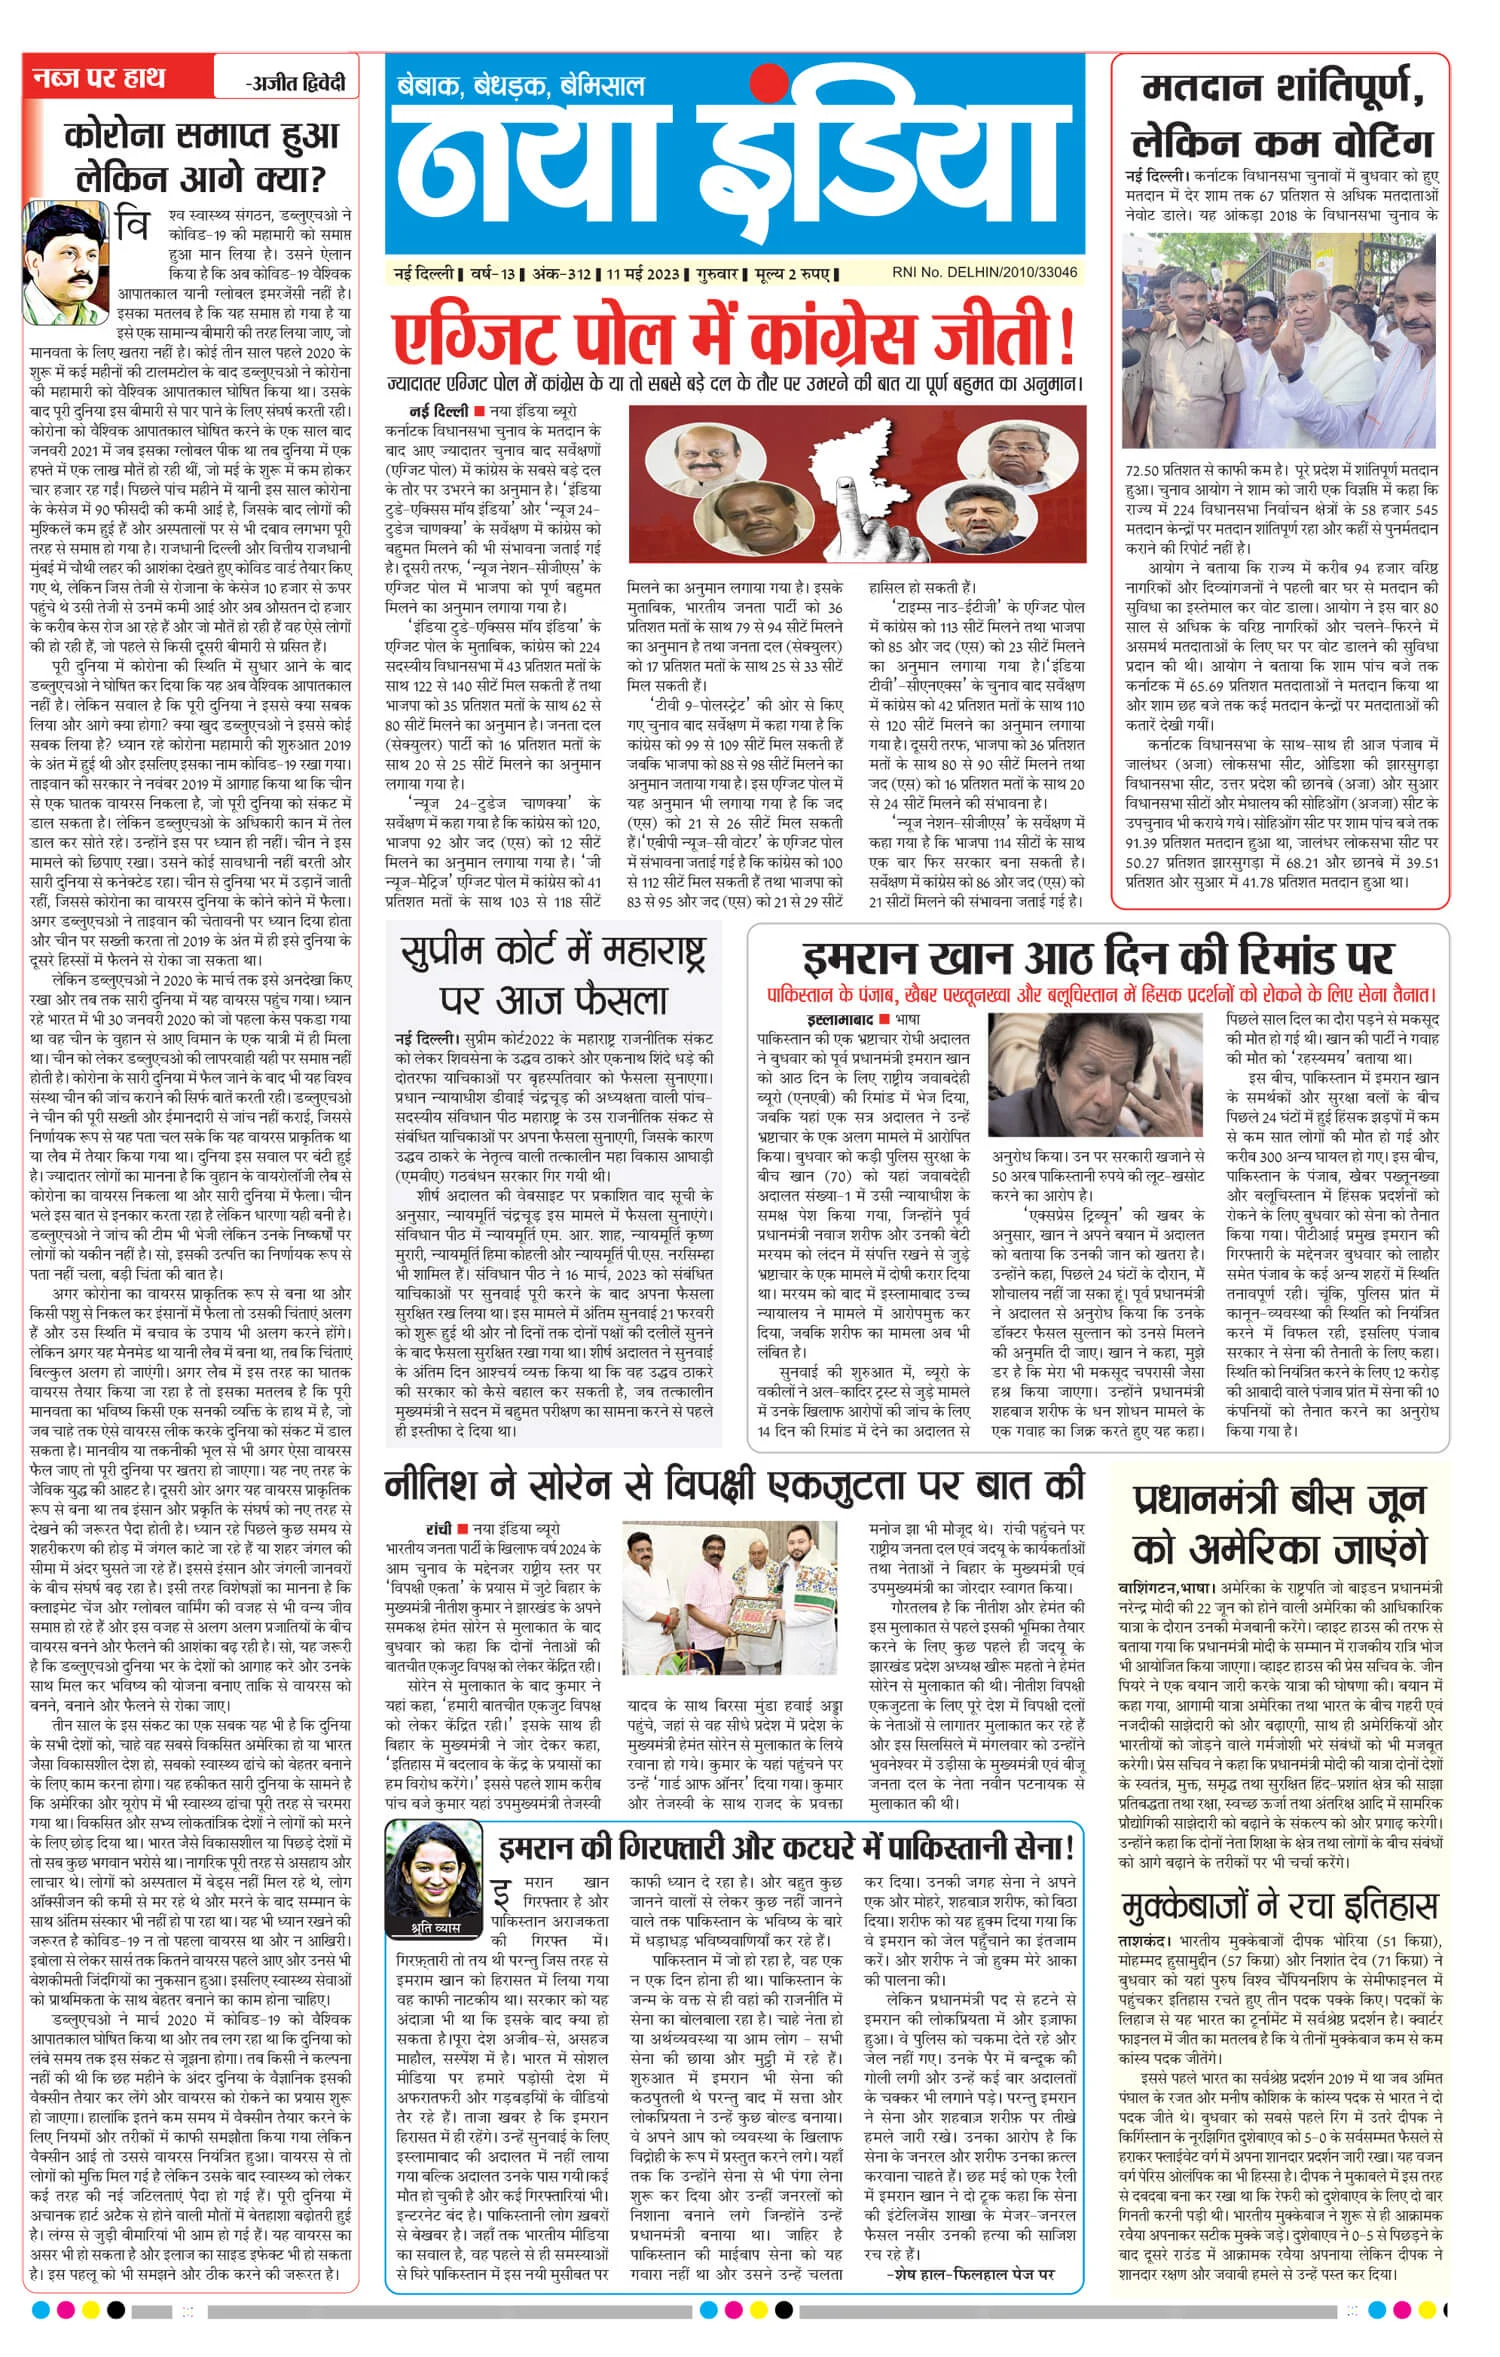 नया इंडिया अखबार पढ़ें